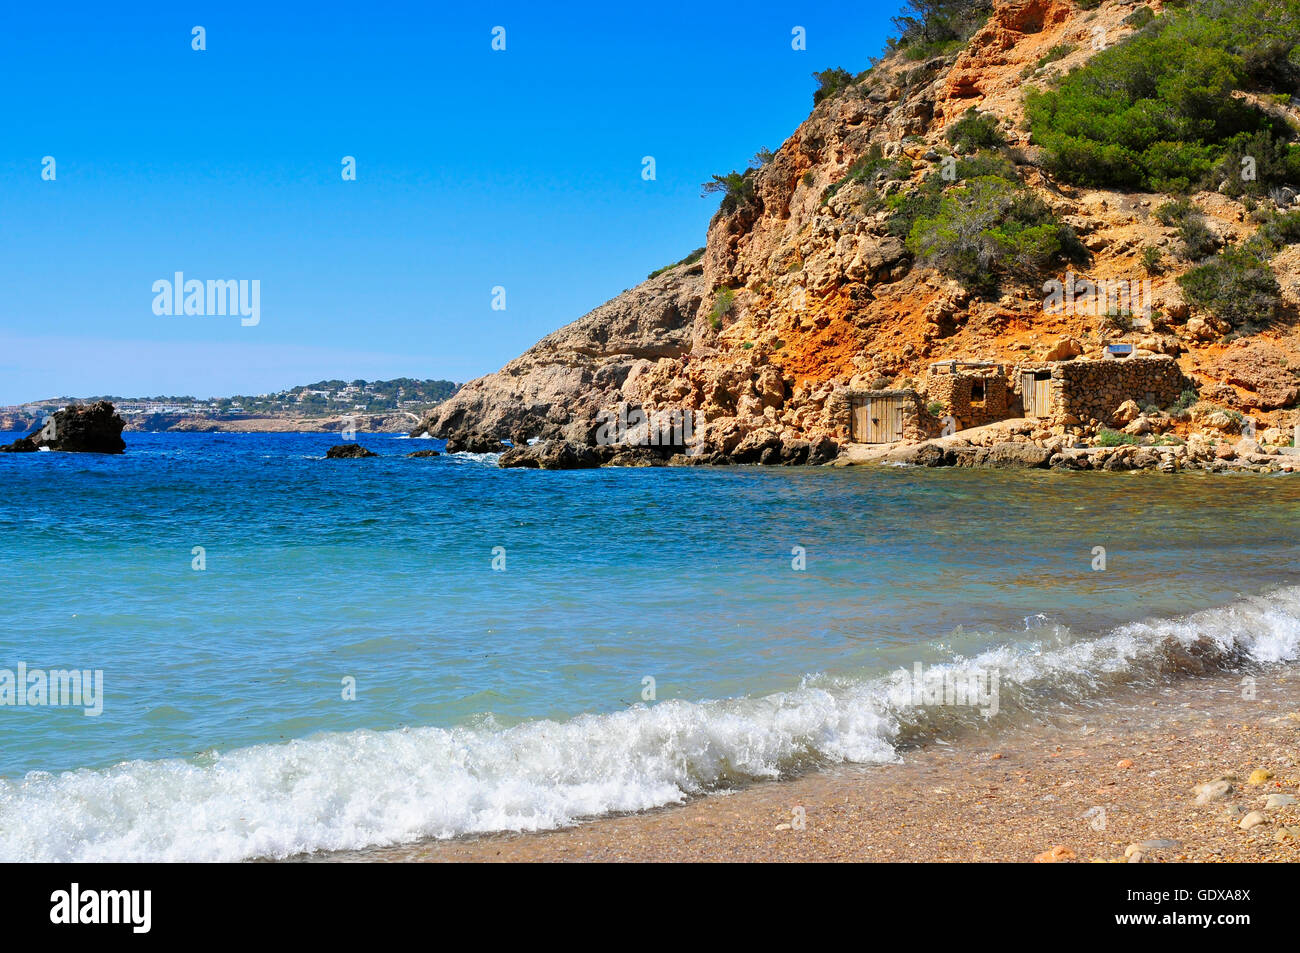 Una vista di una baia solitaria nell isola di Ibiza, Spagna, con alcuni pescatori tradizionali rifugi Foto Stock